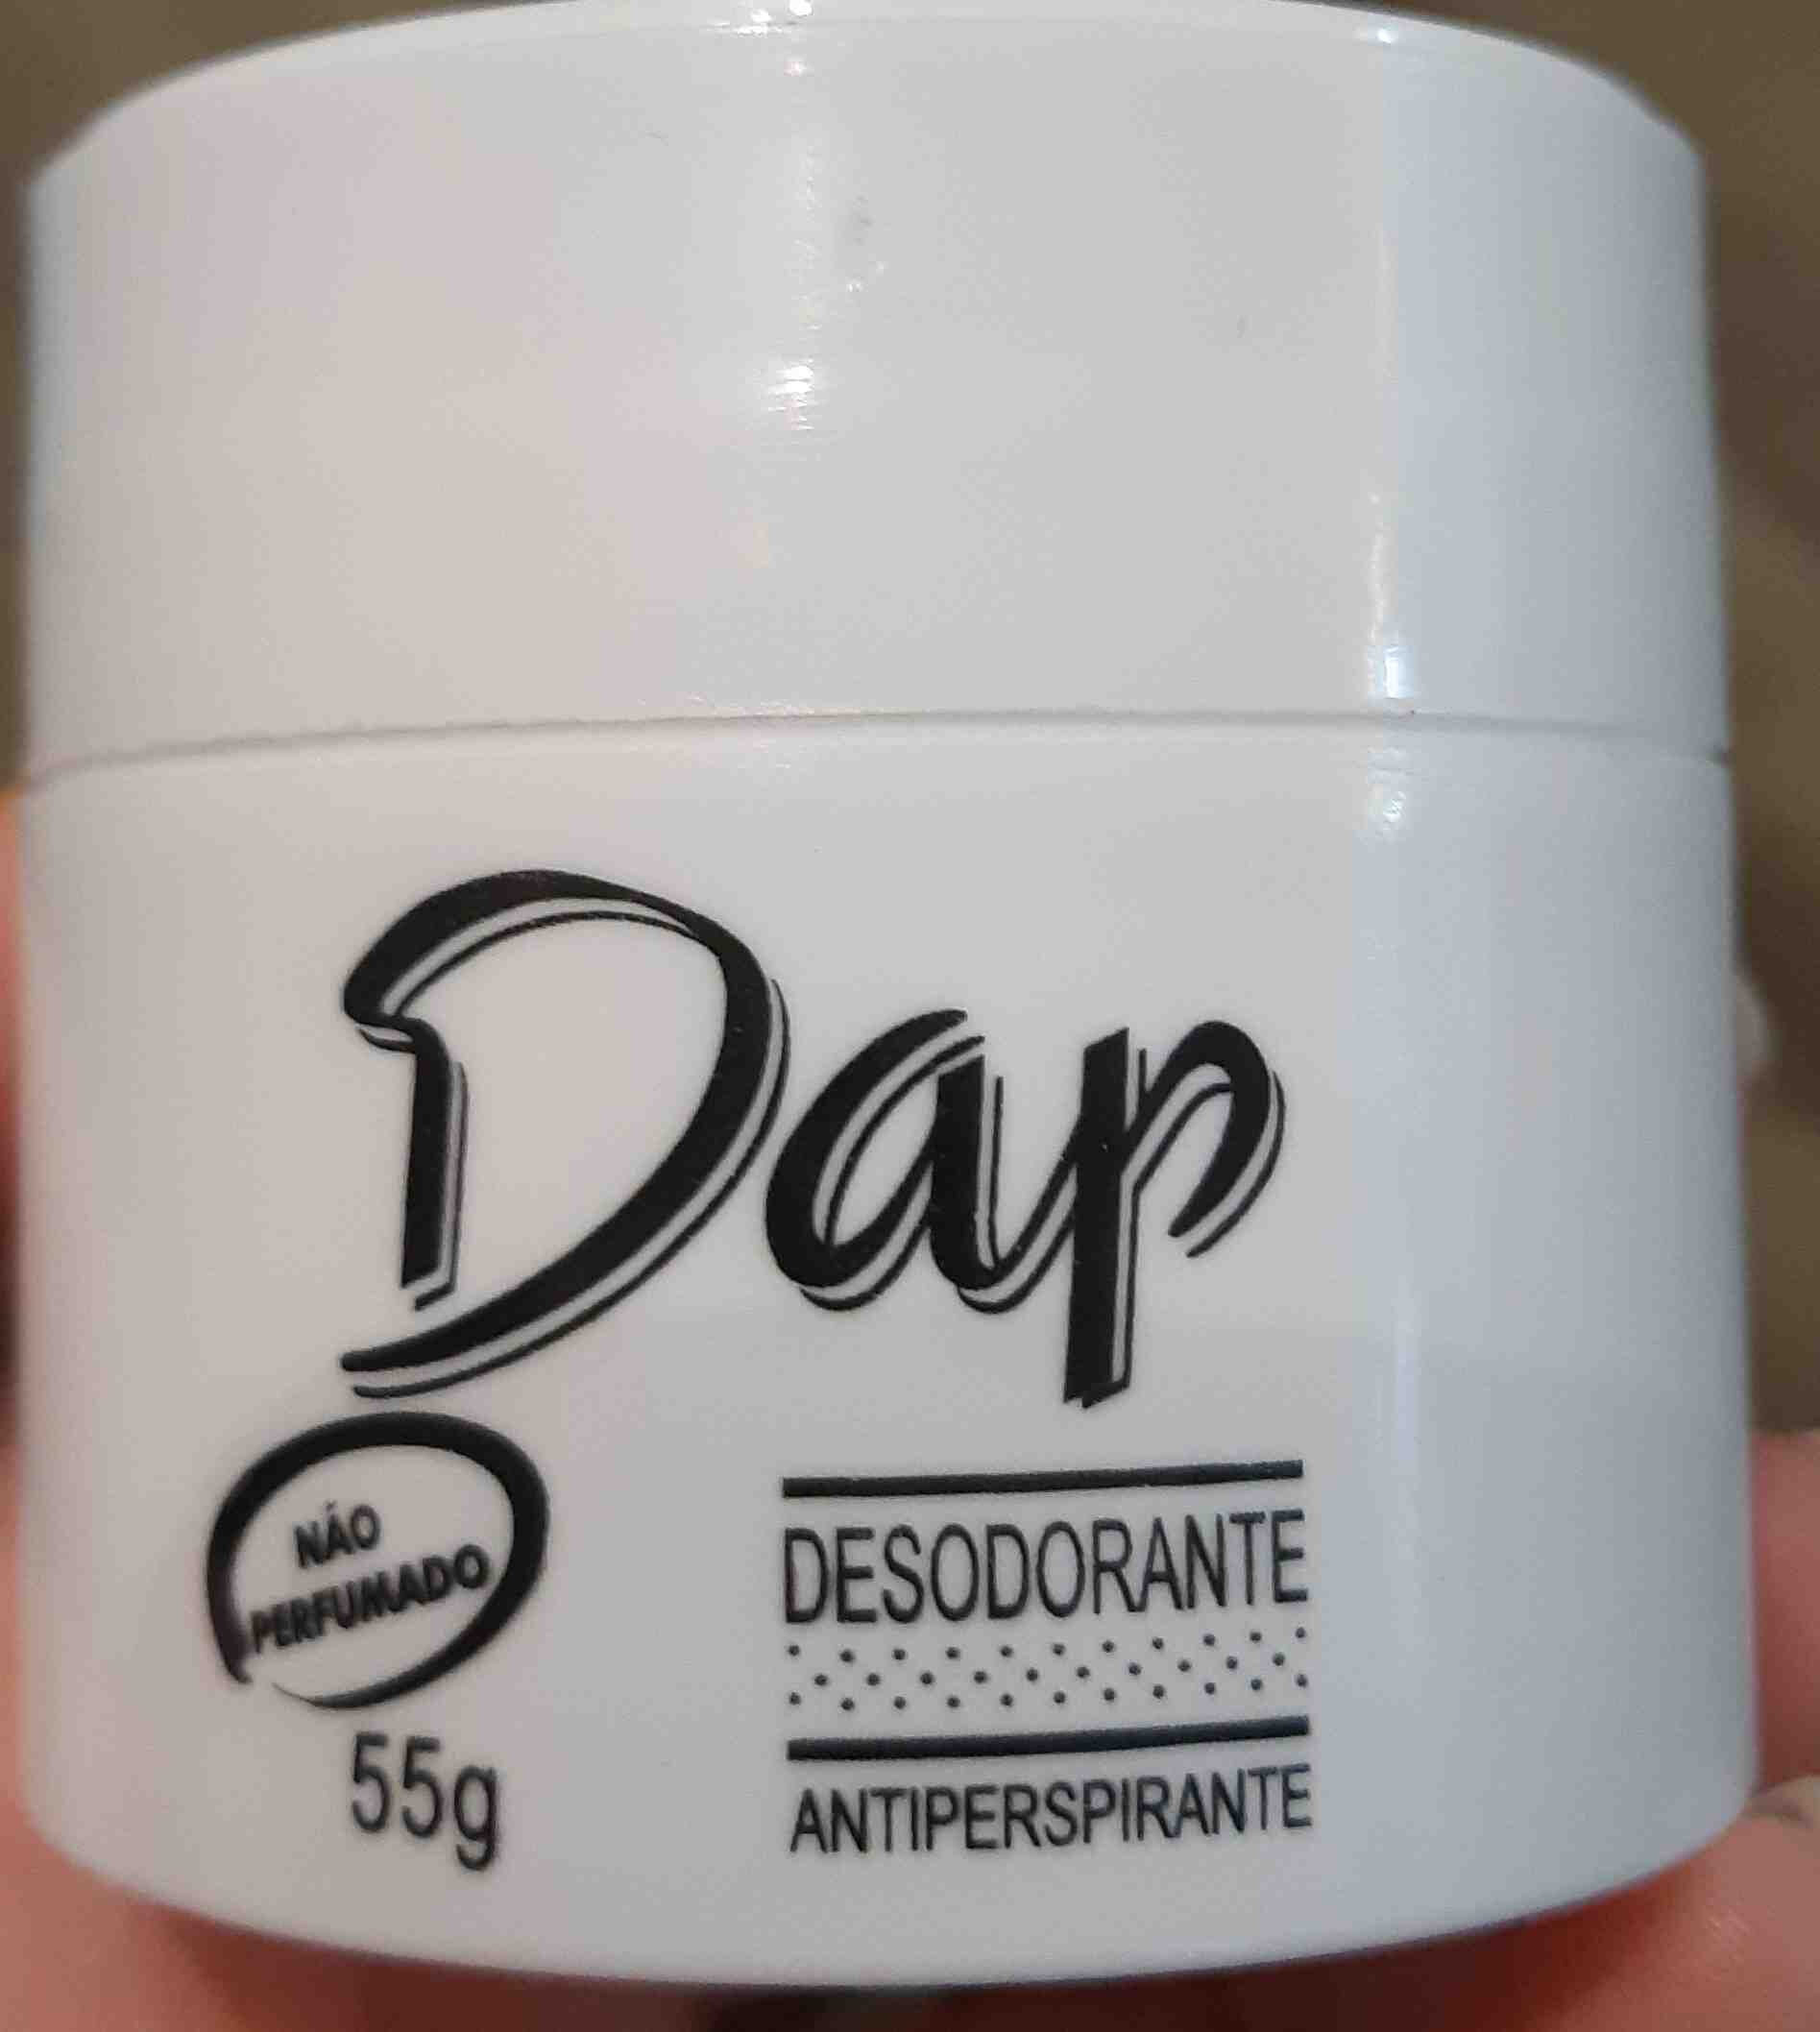 Dap desodorante - Produkt - en